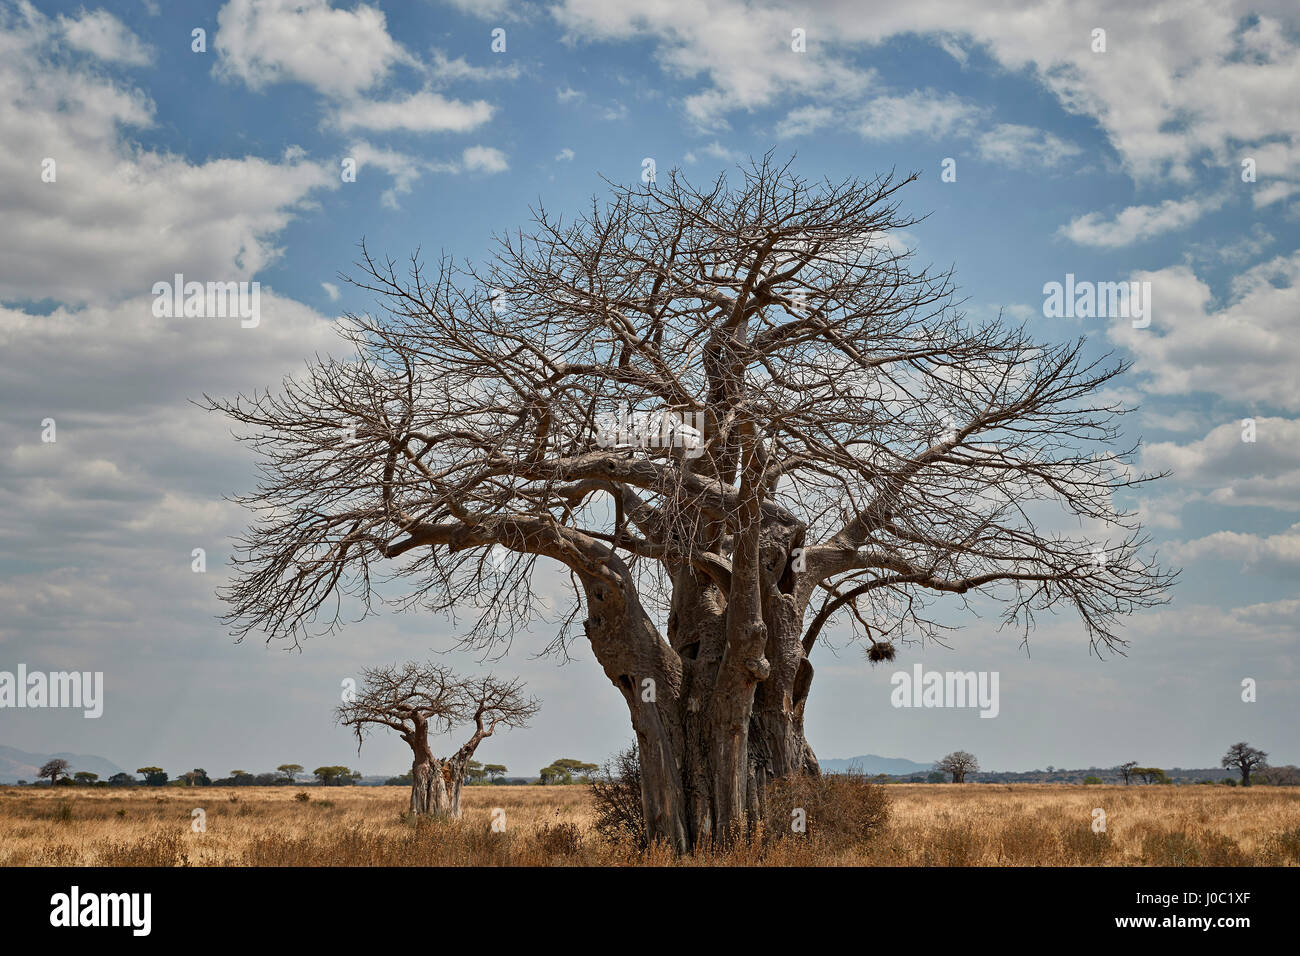 Baobab tree, Ruaha National Park, Tanzania Stock Photo